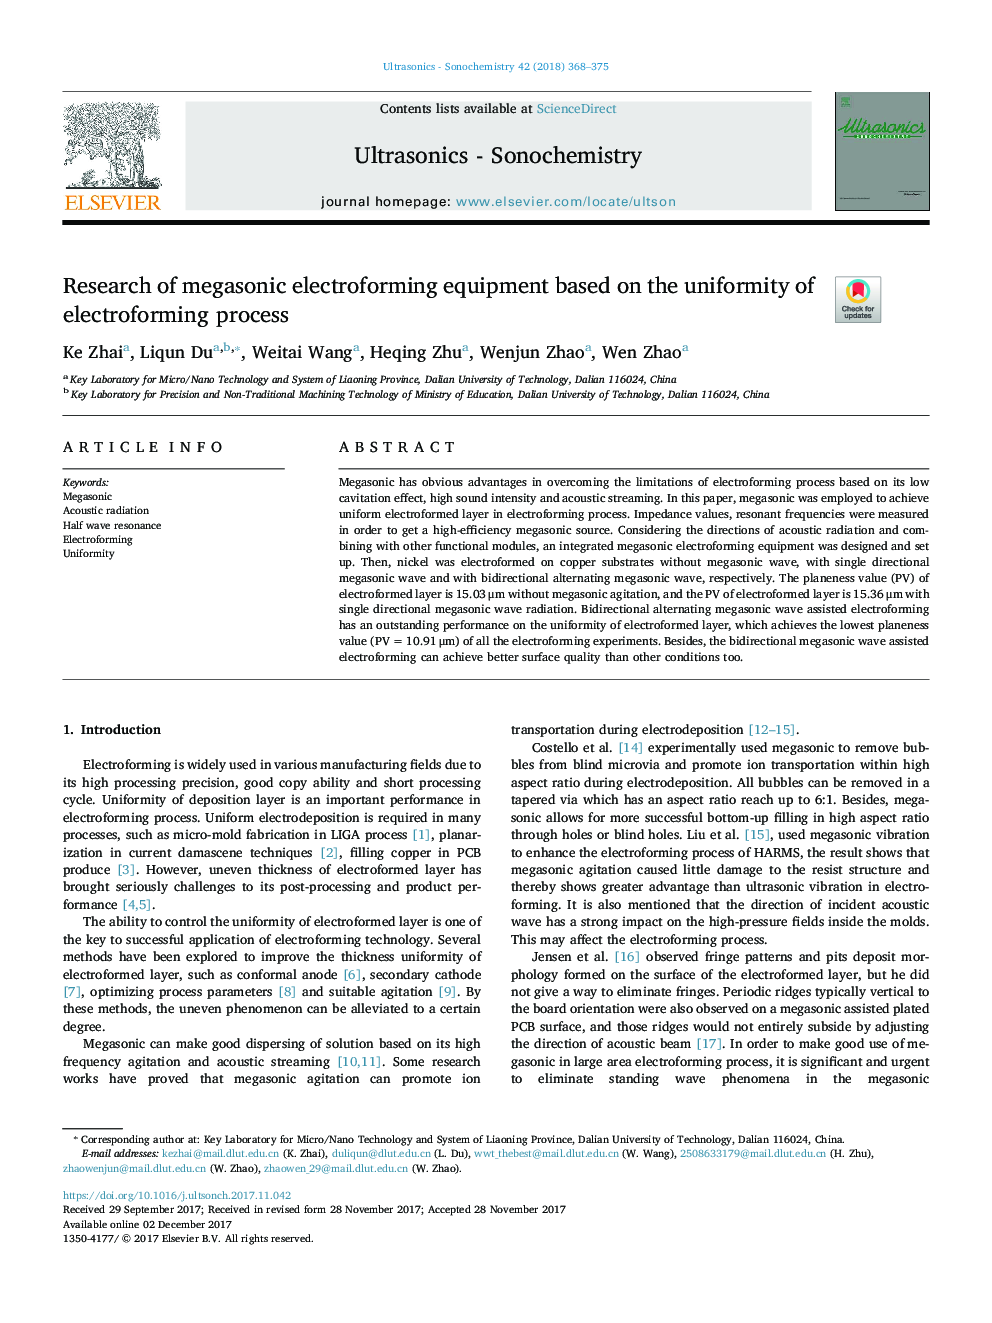 بررسی تجهیزات الکترومغناطیسی مگاسونی بر اساس یکنواختی فرایند الکترومغناطیسی 